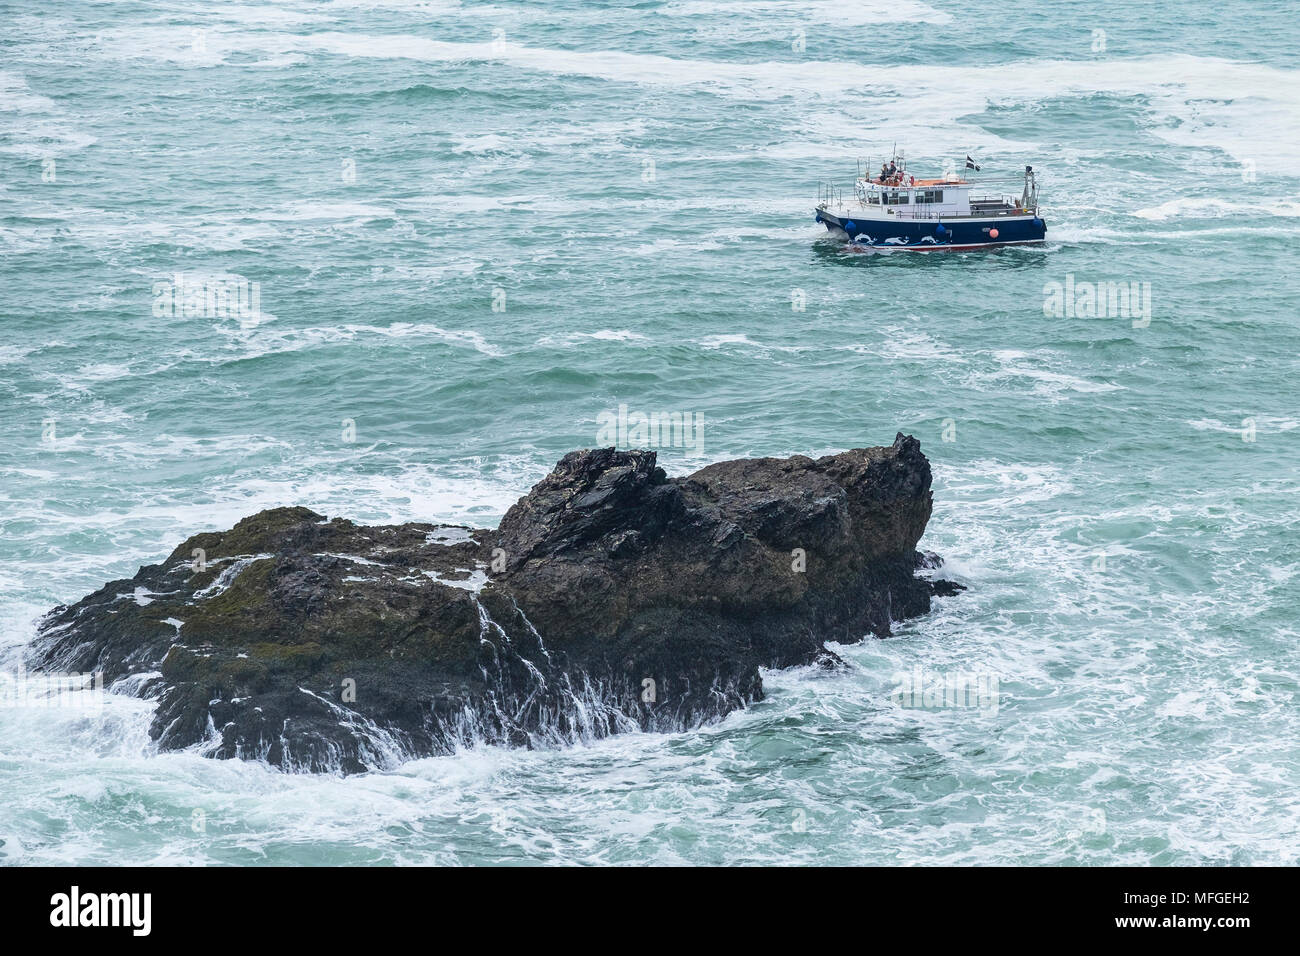 Un bateau-bateau à passé une petite île rocheuse dans la mer au large de la côte nord des Cornouailles. Banque D'Images